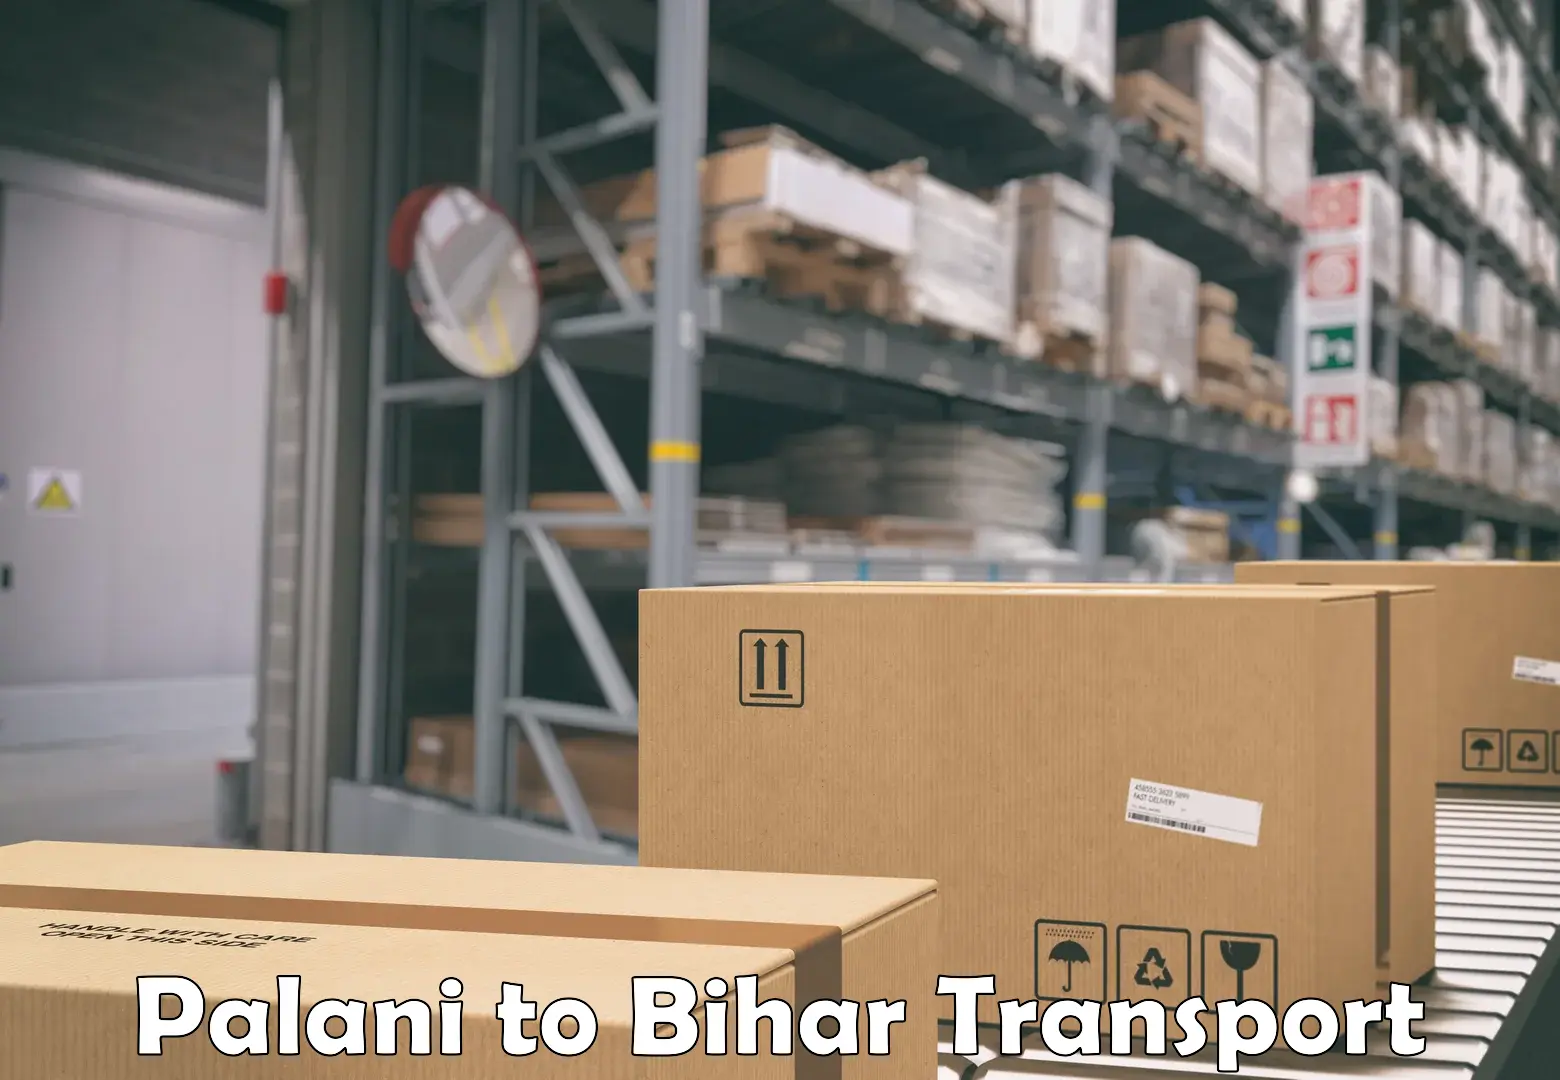 Express transport services Palani to Bihar